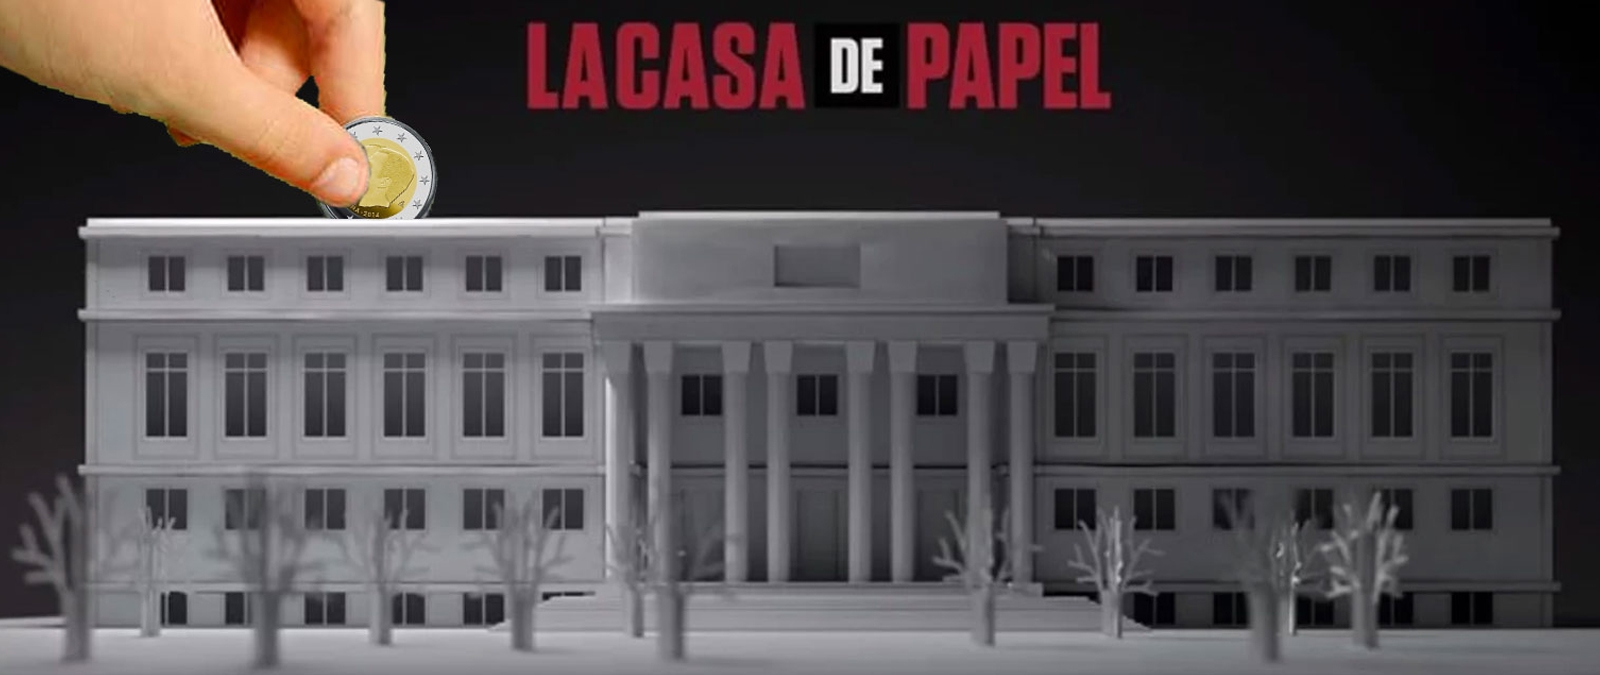 El rodaje de 'La casa de papel' en edificios públicos: cuánto costó y dónde  se grabó · Maldita.es - Periodismo para que no te la cuelen